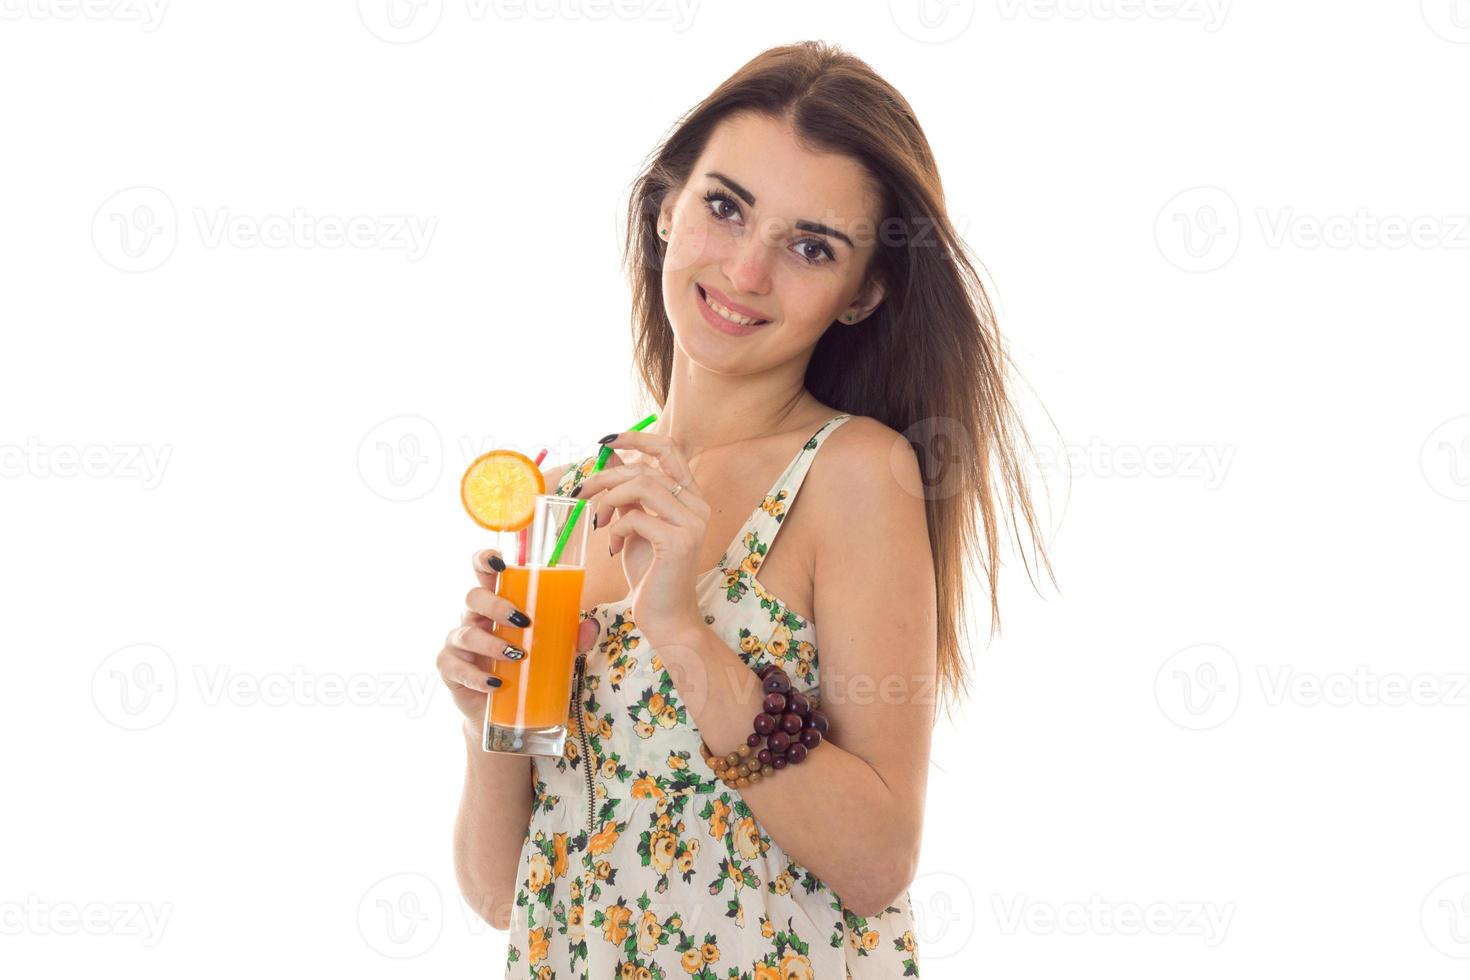 jovem linda menina morena em sarafan com padrão floral bebe coquetel de laranja e sorrindo para a câmera isolada no fundo branco foto